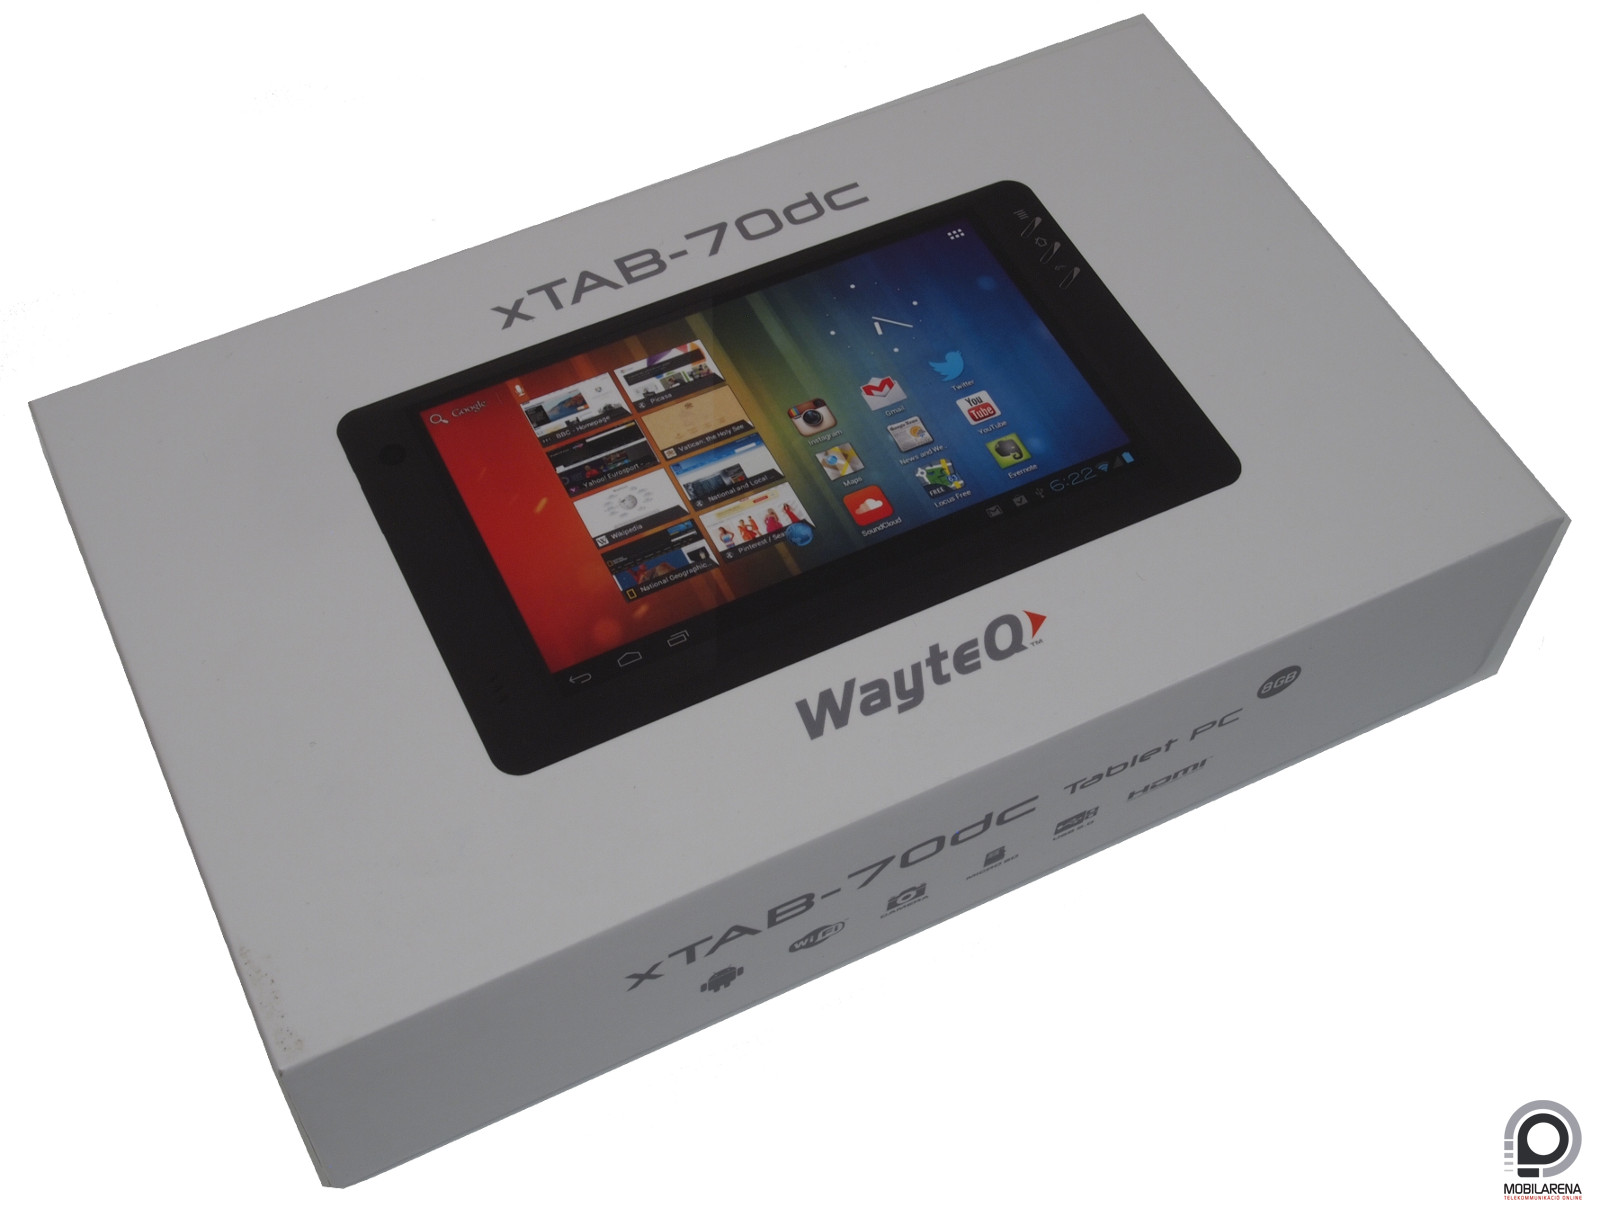 WayteQ xTAB-70dc - ha kicsi a tét, a kedve sötét - Mobilarena Tablet teszt  - Nyomtatóbarát verzió